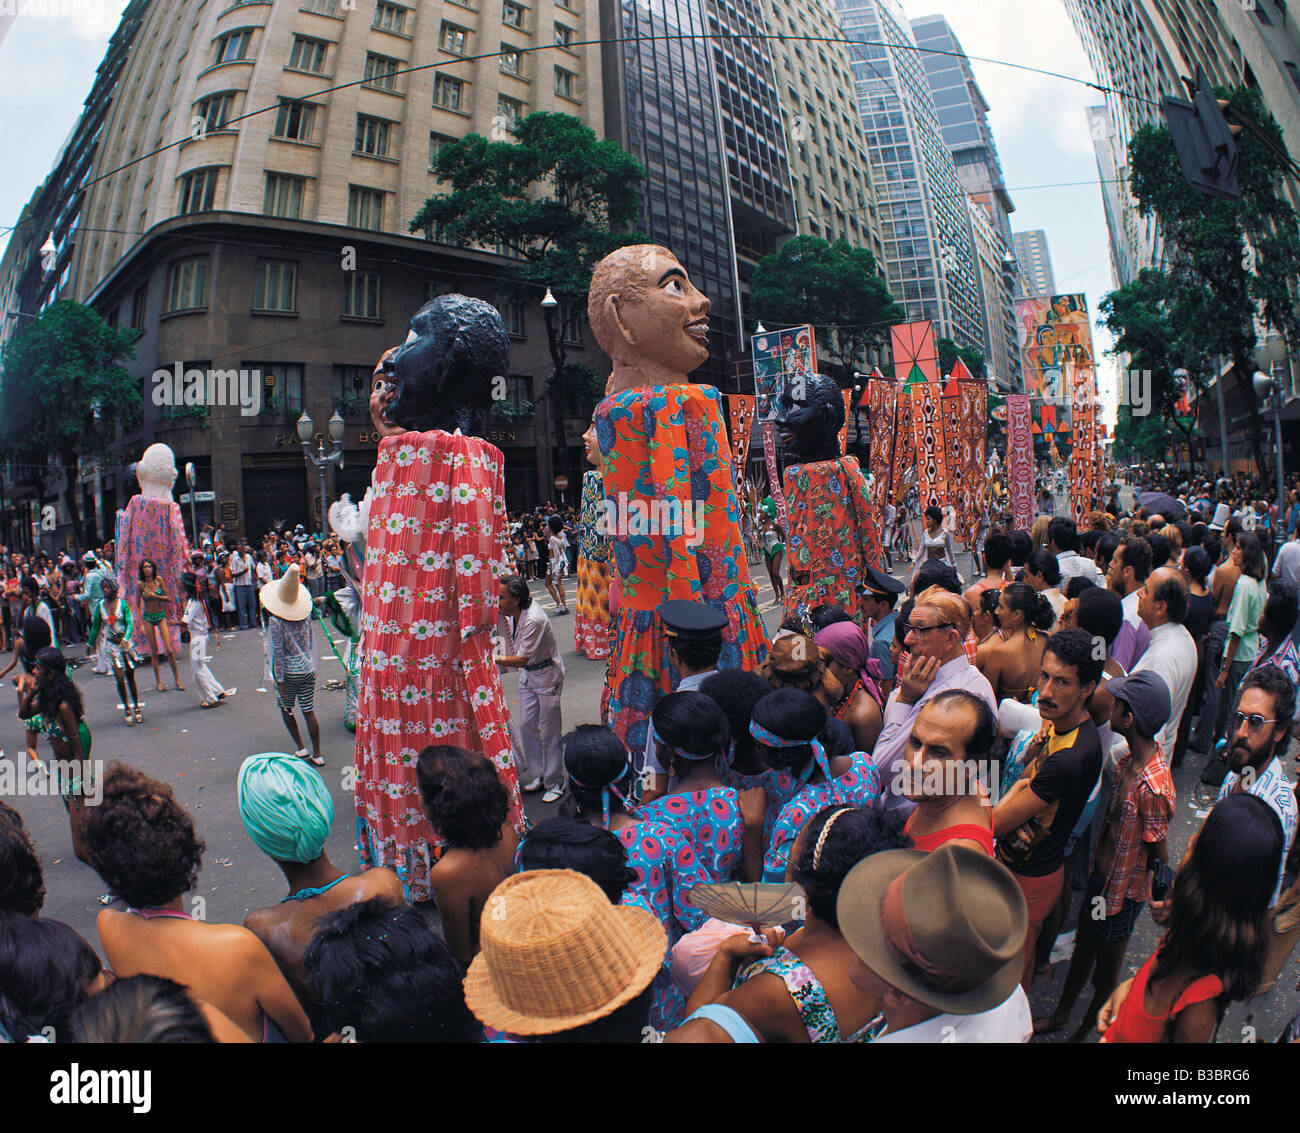 Brazil. Rio de Janeiro. Carnival procession. Stock Photo